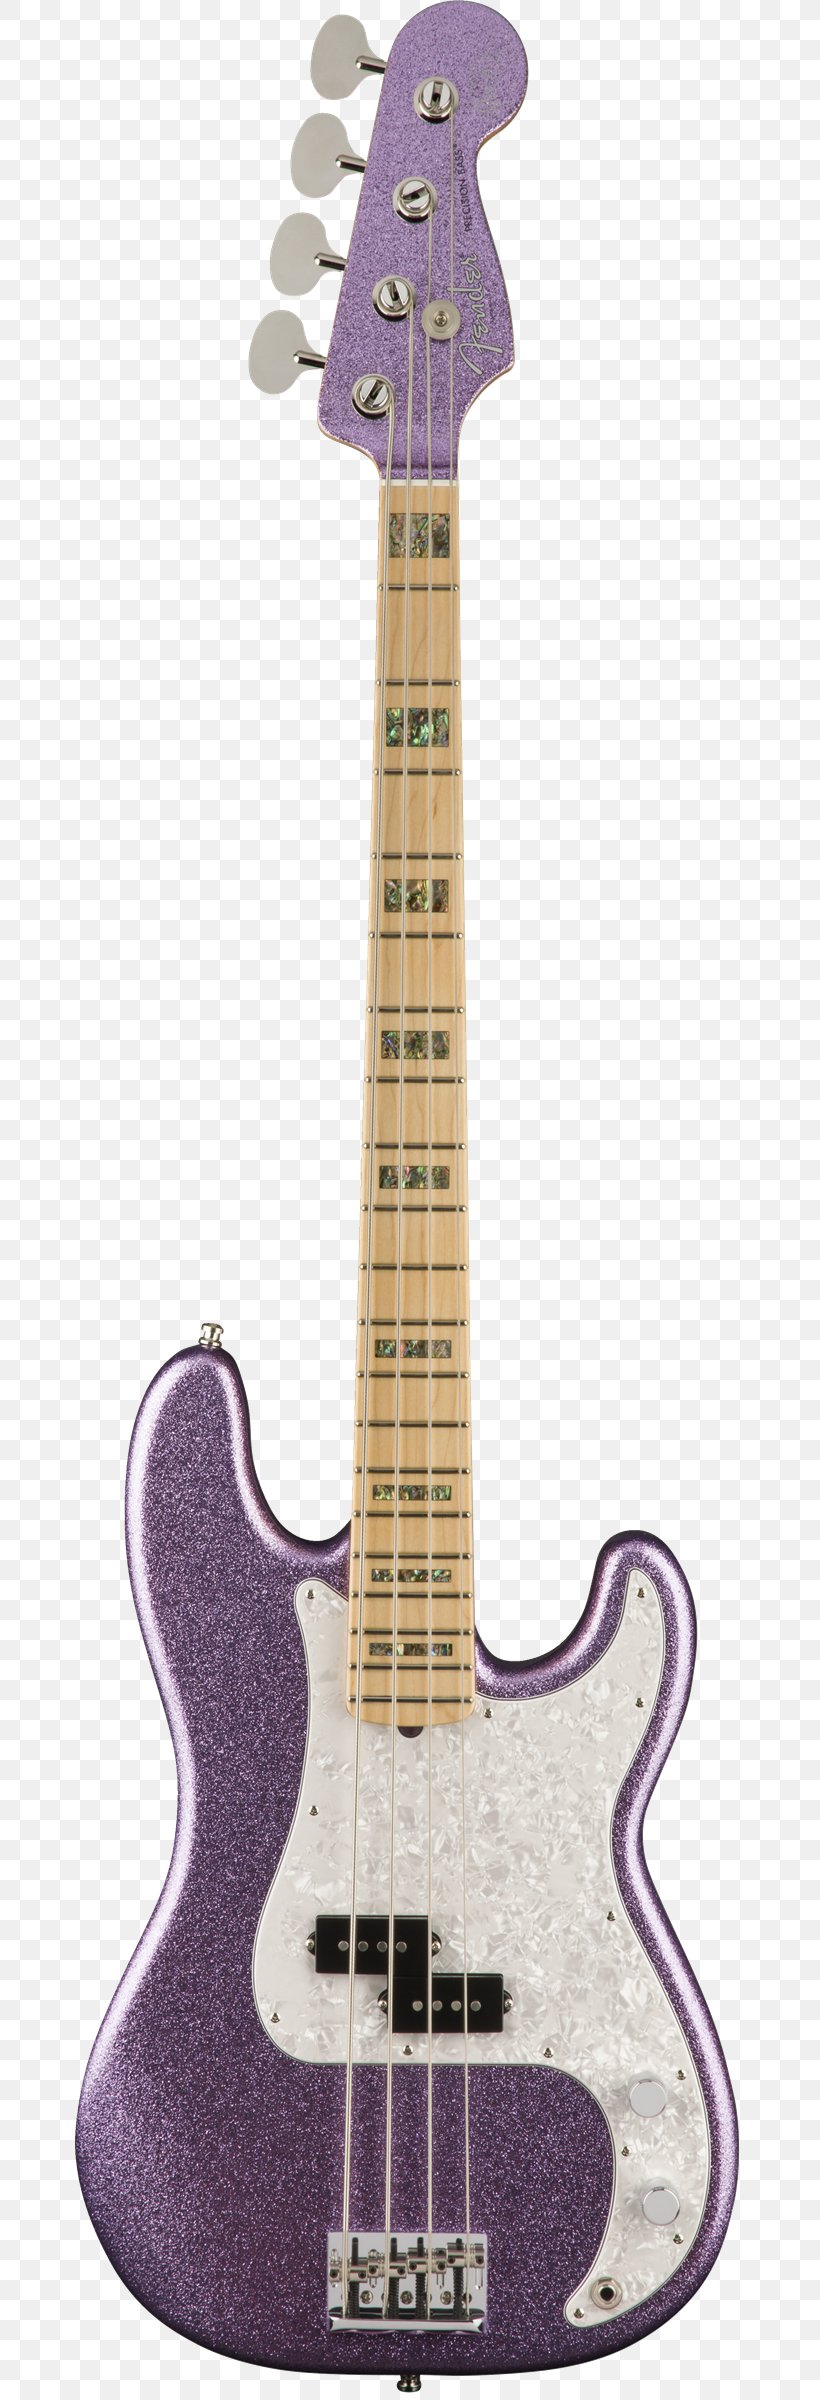 Fender Precision Bass Fender Mustang Bass Fender Jazz Bass Fender Musical Instruments Corporation Bass Guitar, PNG, 672x2400px, Watercolor, Cartoon, Flower, Frame, Heart Download Free